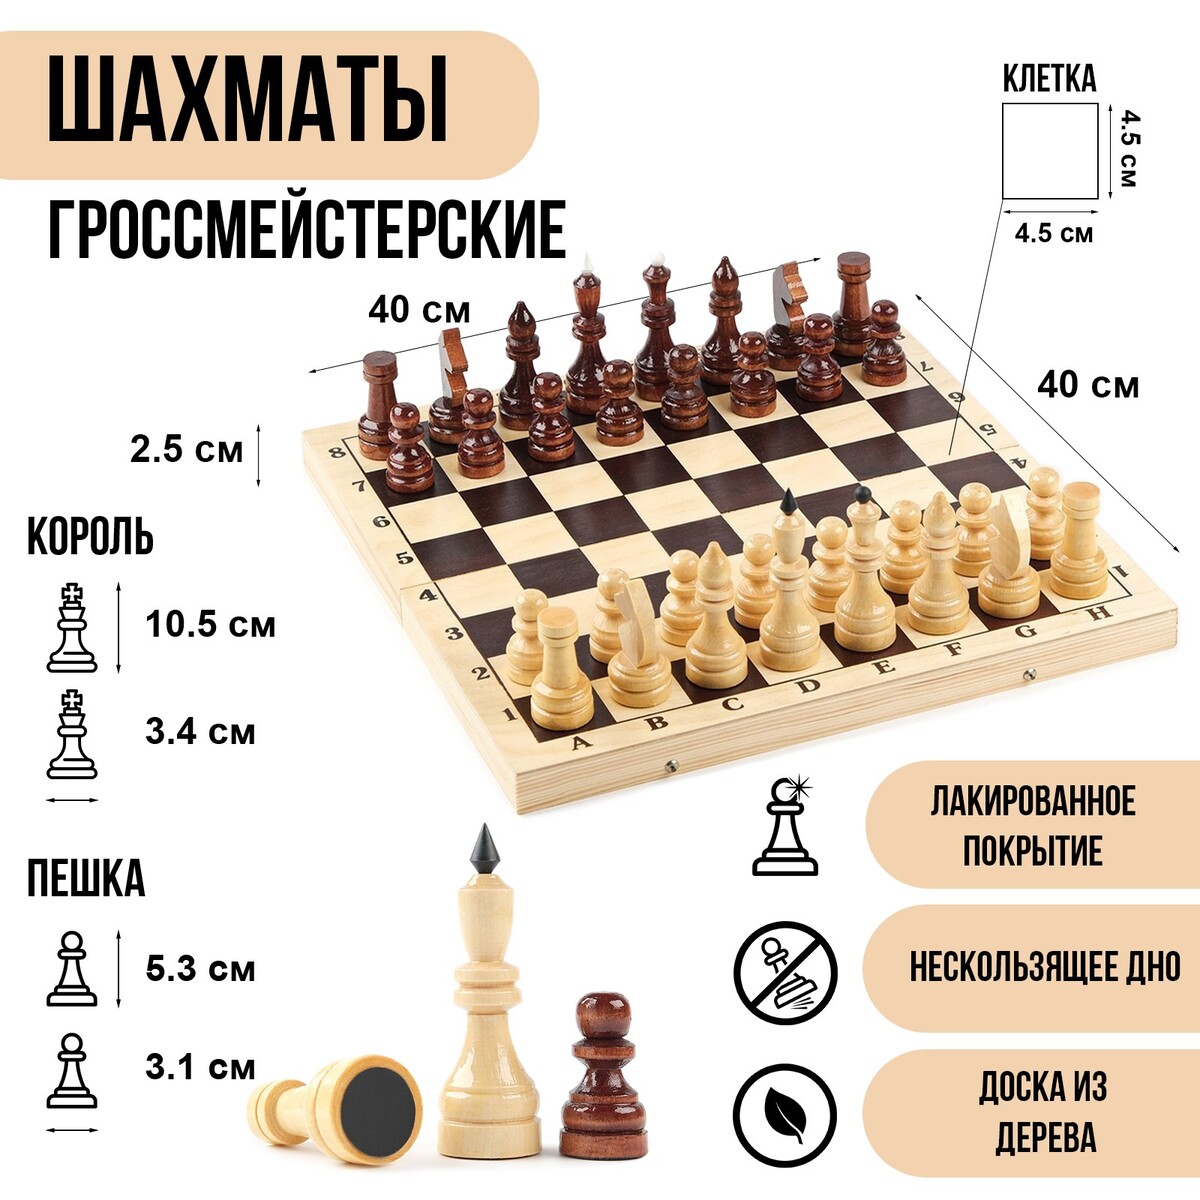 Шахматы деревянные гроссмейстерские, турнирные, король h-10.5 см, пешка h-5.3 см шахматы обиходные 29 х 29 см король 6 7 см пешка 3 5 см